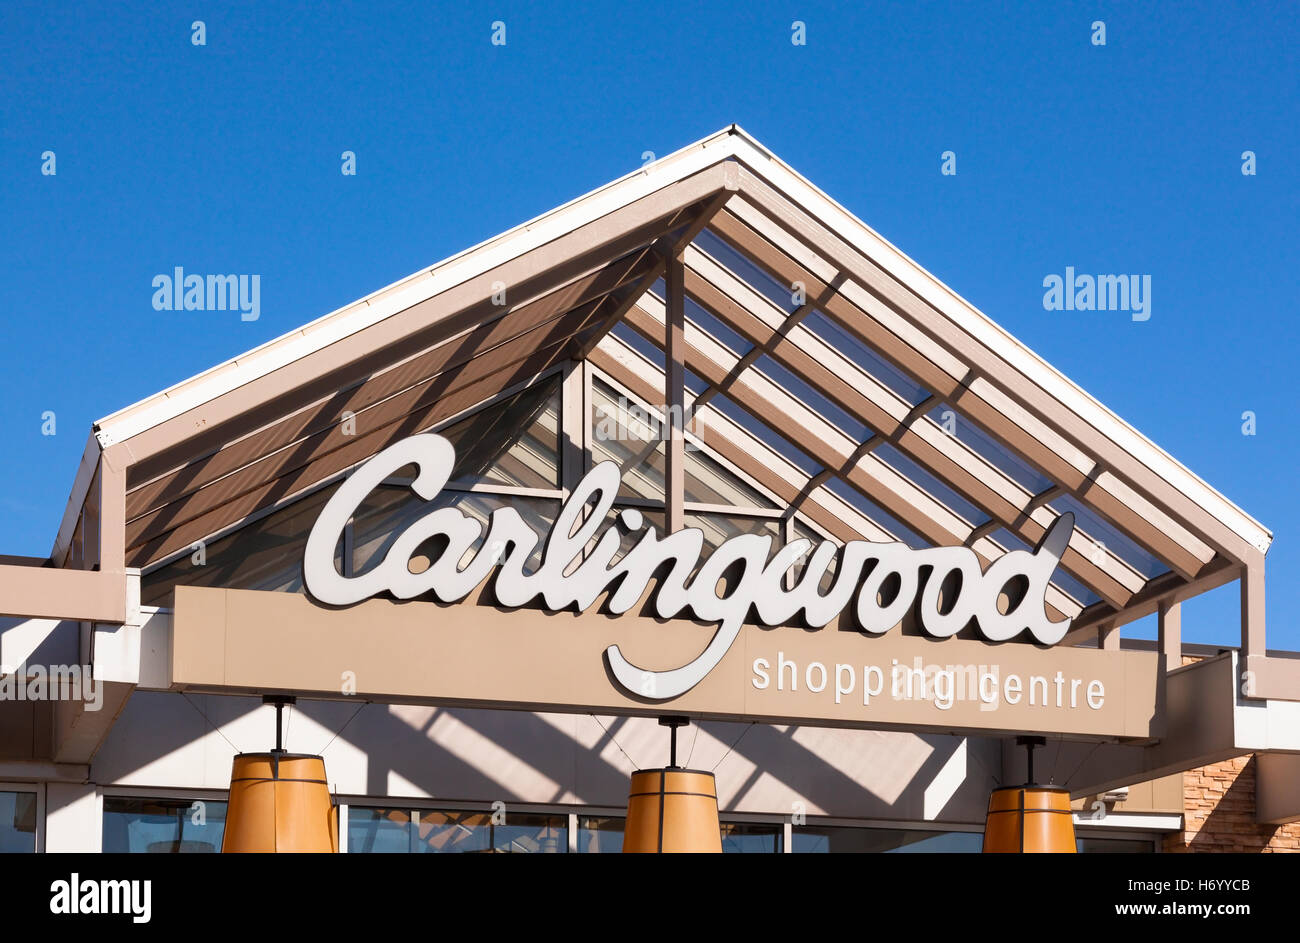 Un ingresso per la Carlingwood Shopping Centre (Carlingwood Mall) in Ottawa, Ontario, Canada. Foto Stock